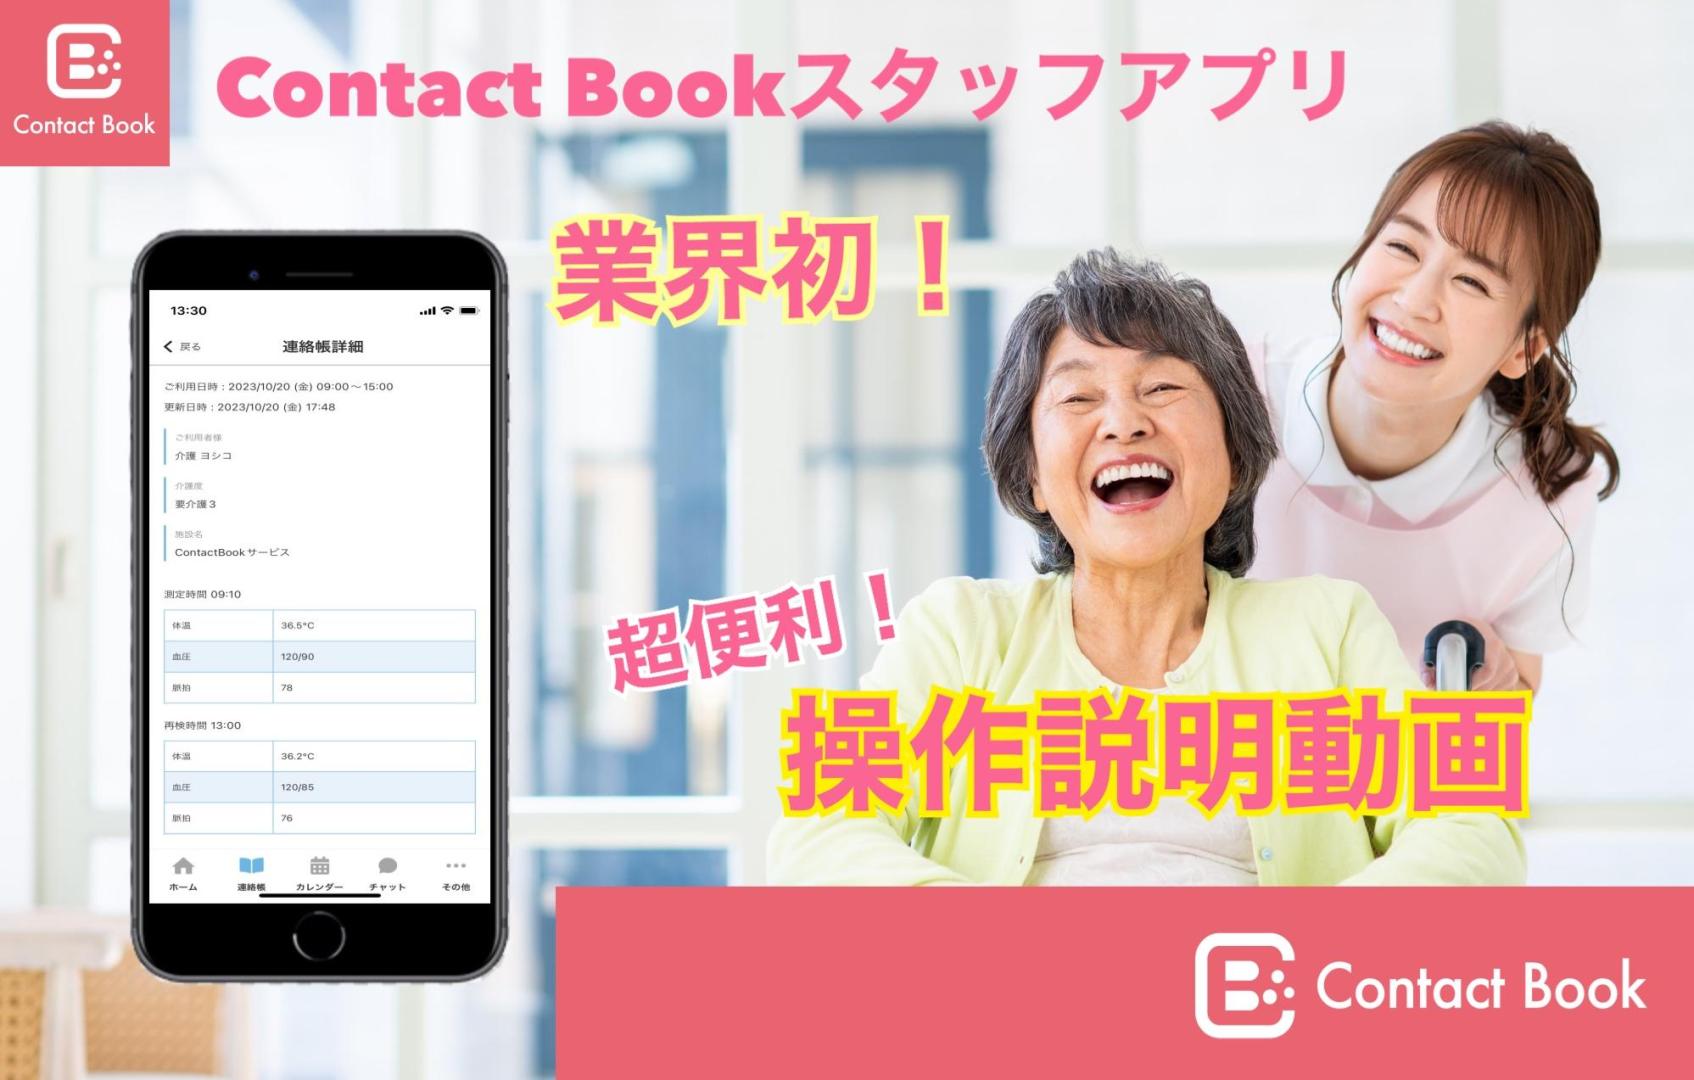 Contact Bookスタッフ版アプリ操作説明動画